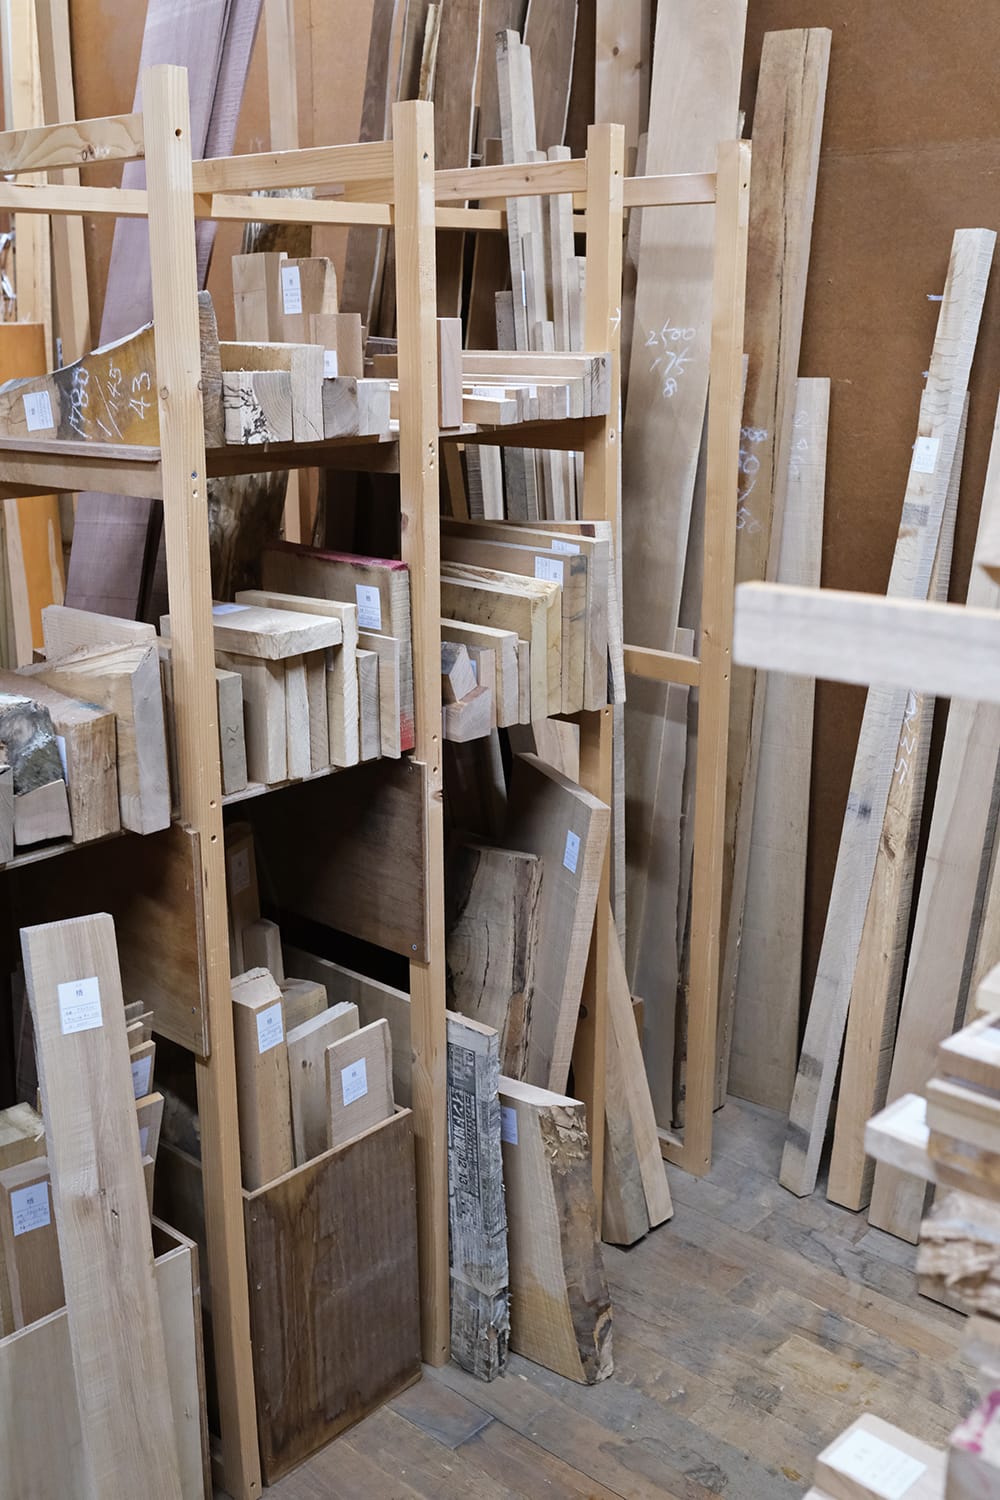 札幌の河野銘木店木心庵で売っている木材端切れが並べられた棚